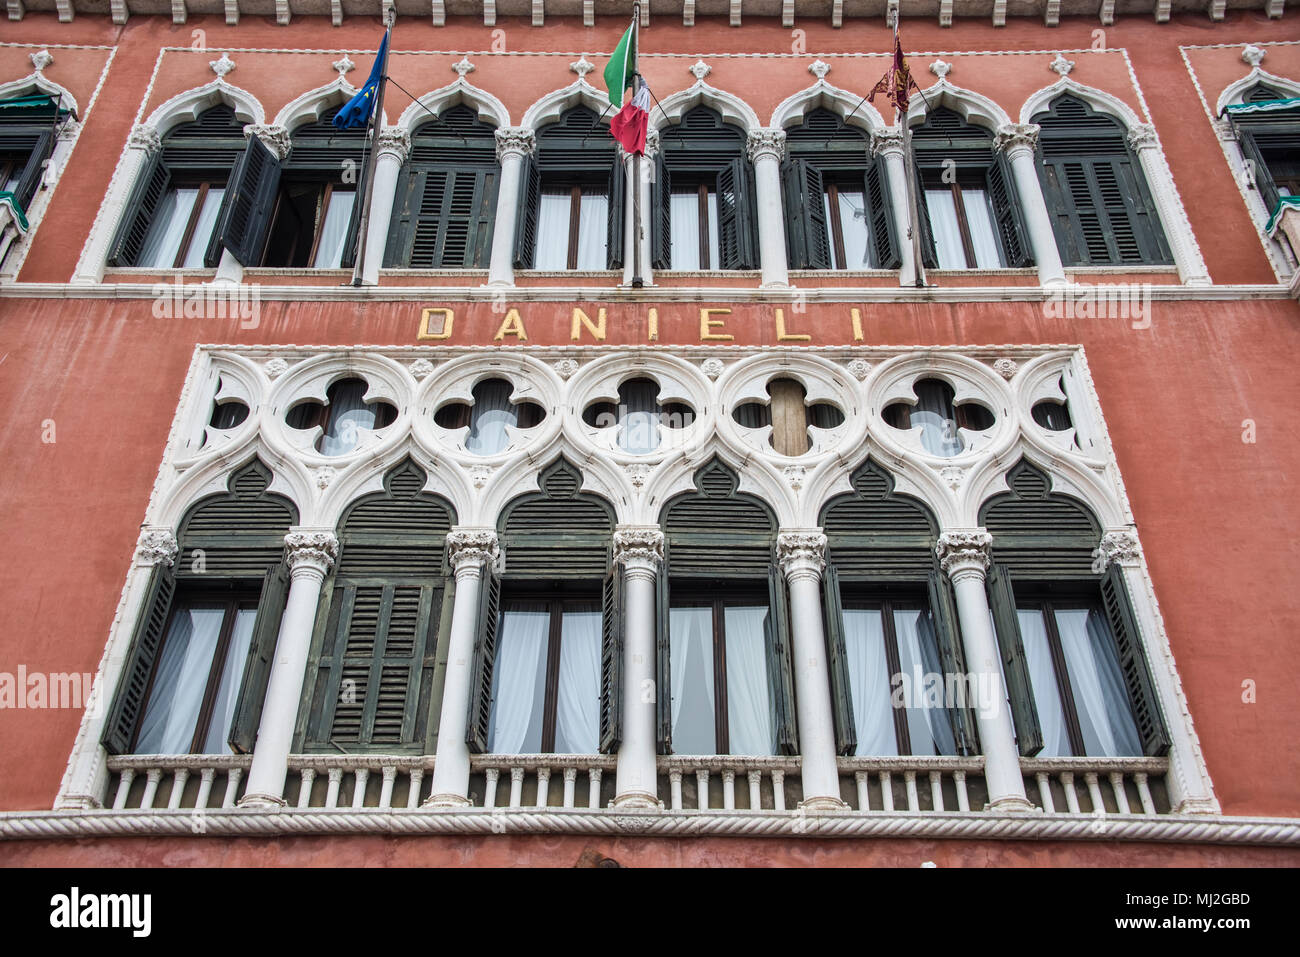 Les fenêtres supérieures de la façade de l'hôtel Danieli, Venise Banque D'Images